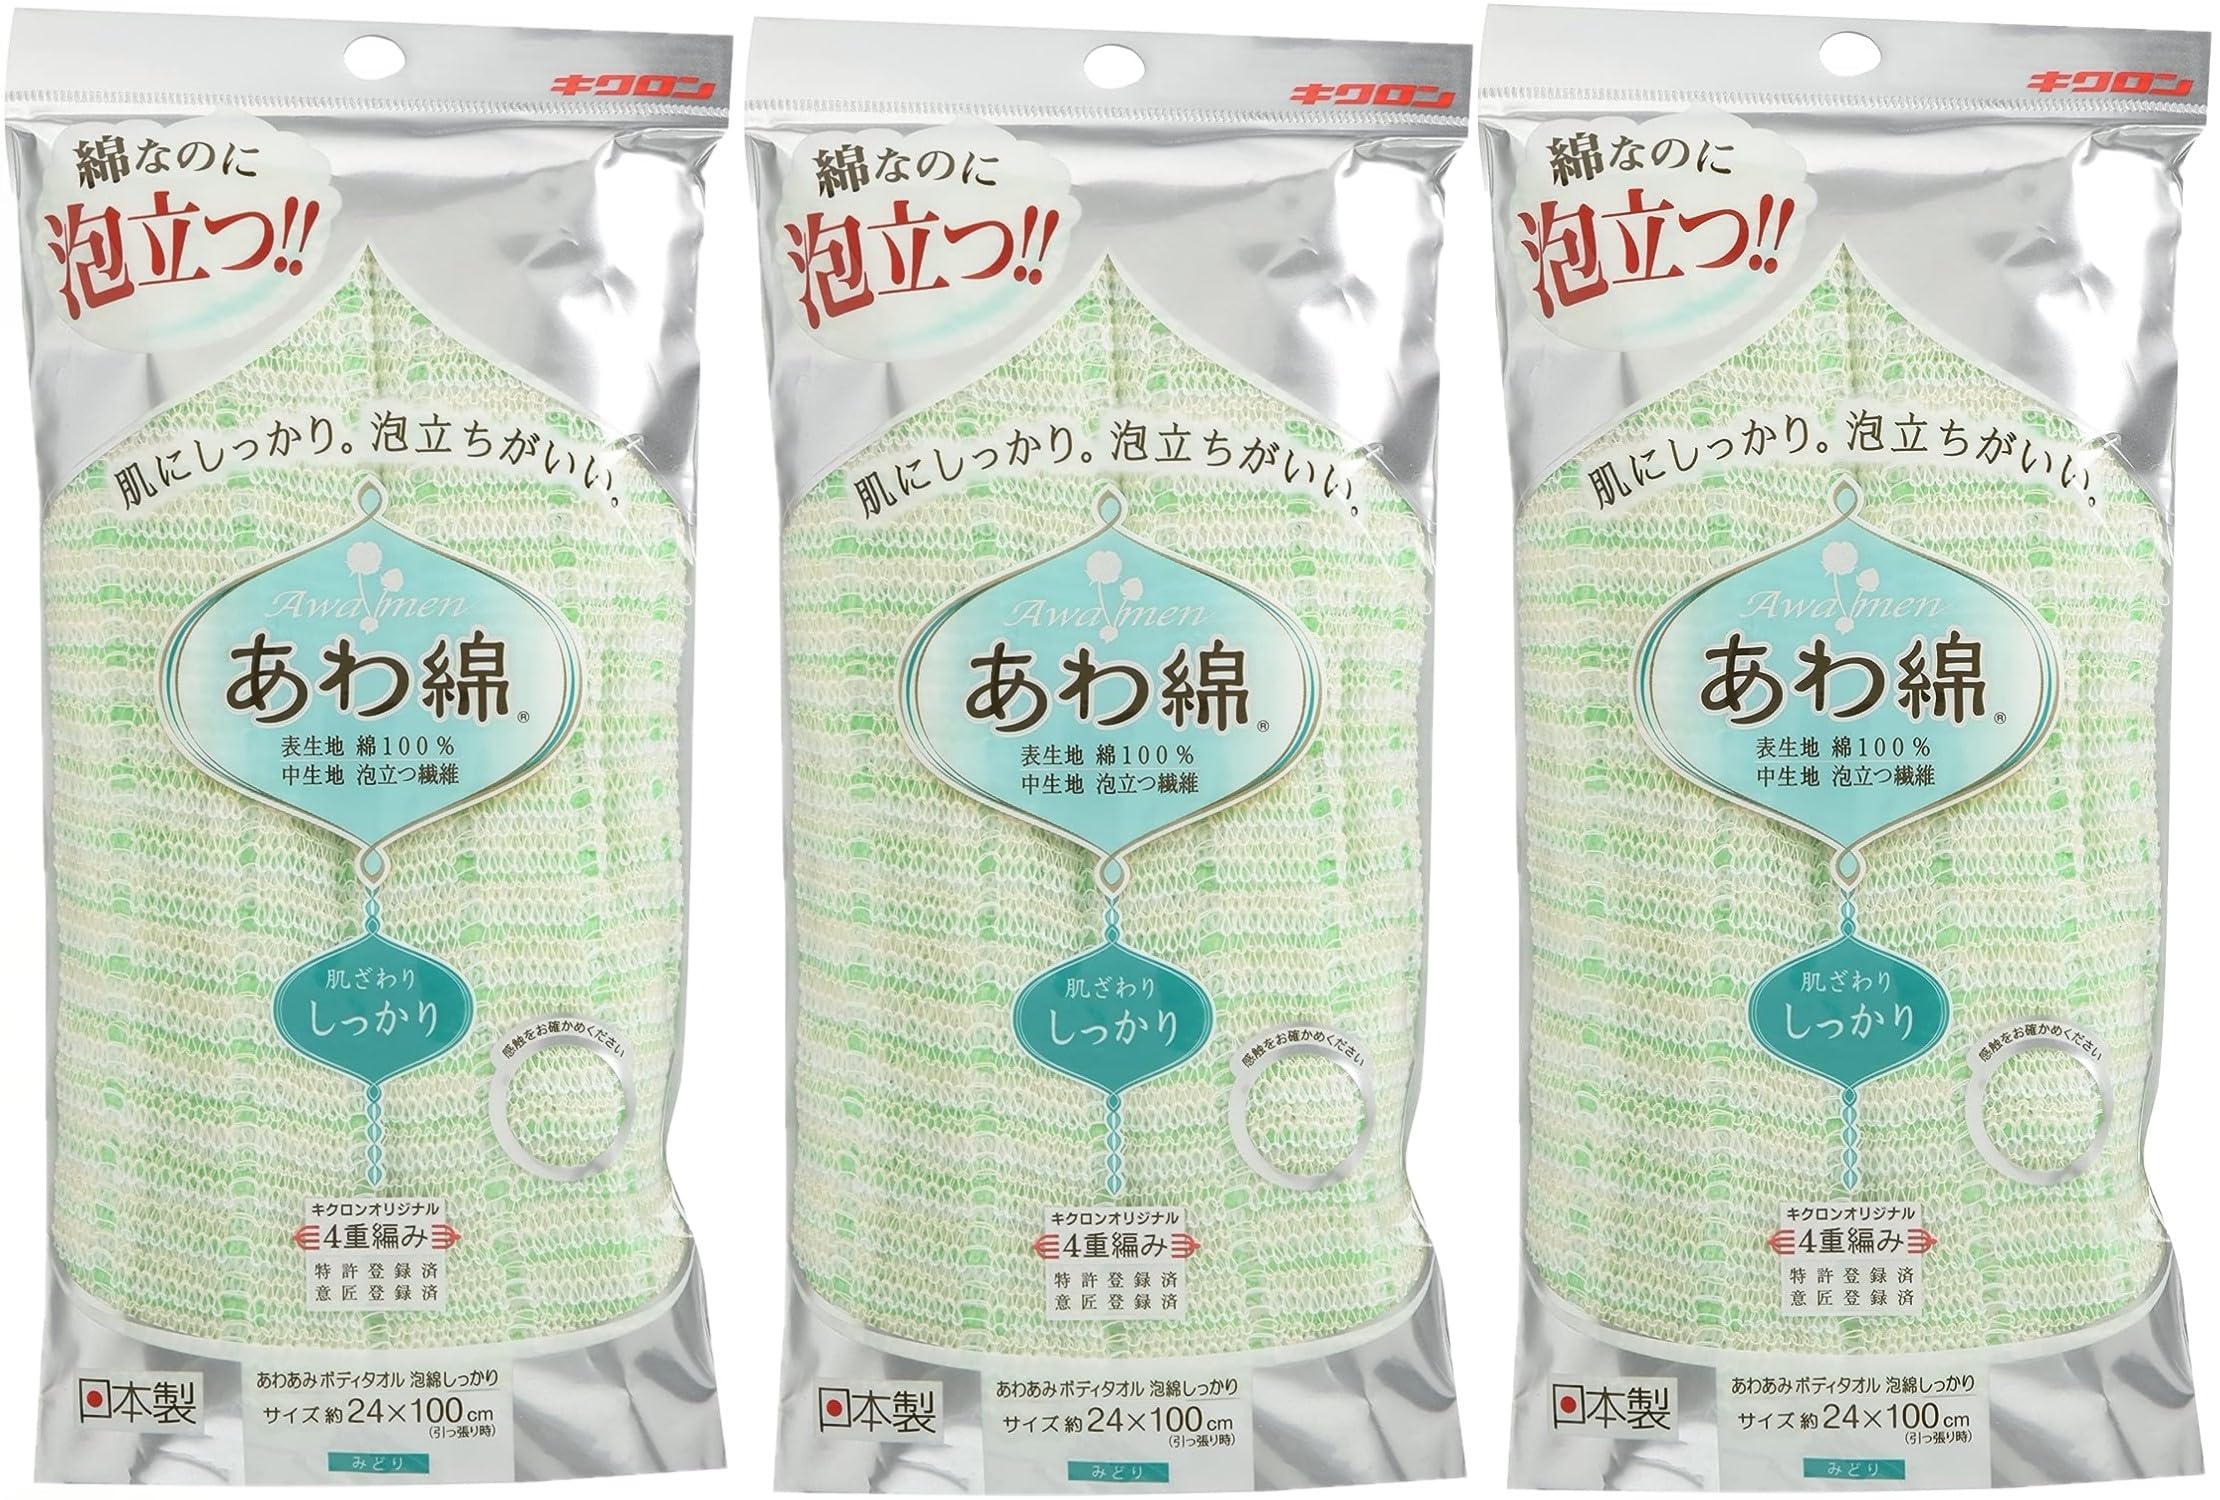 キクロン ボディタオル 綿100% みどり 泡綿 日本製 1枚入×3個セット